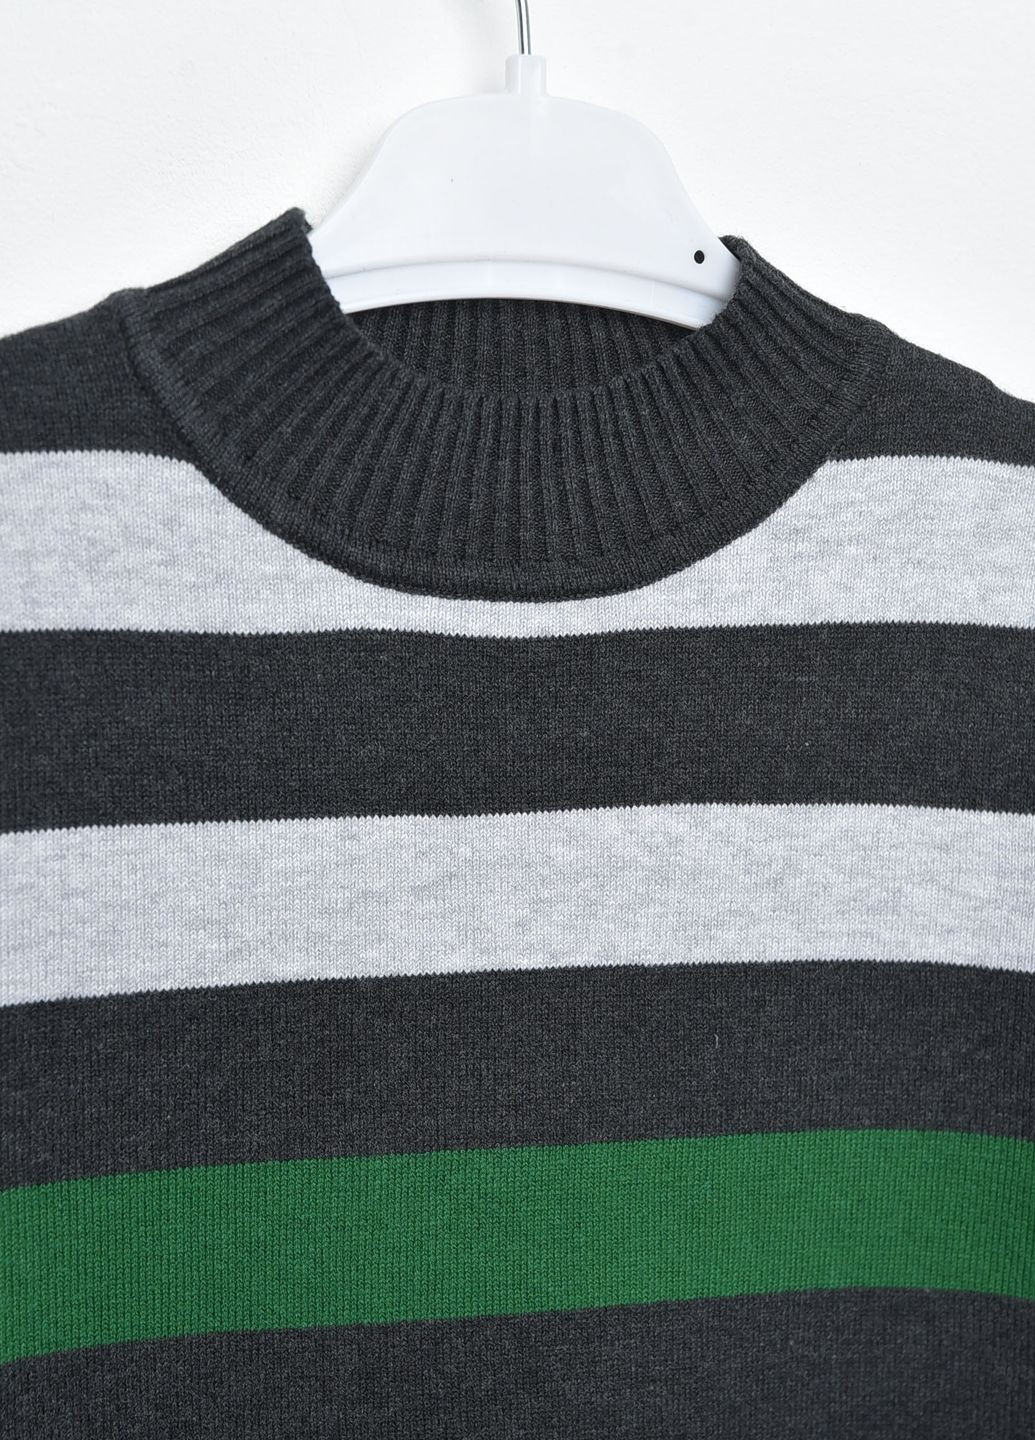 Комбинированный демисезонный свитер детский для мальчика в полоску пуловер Let's Shop